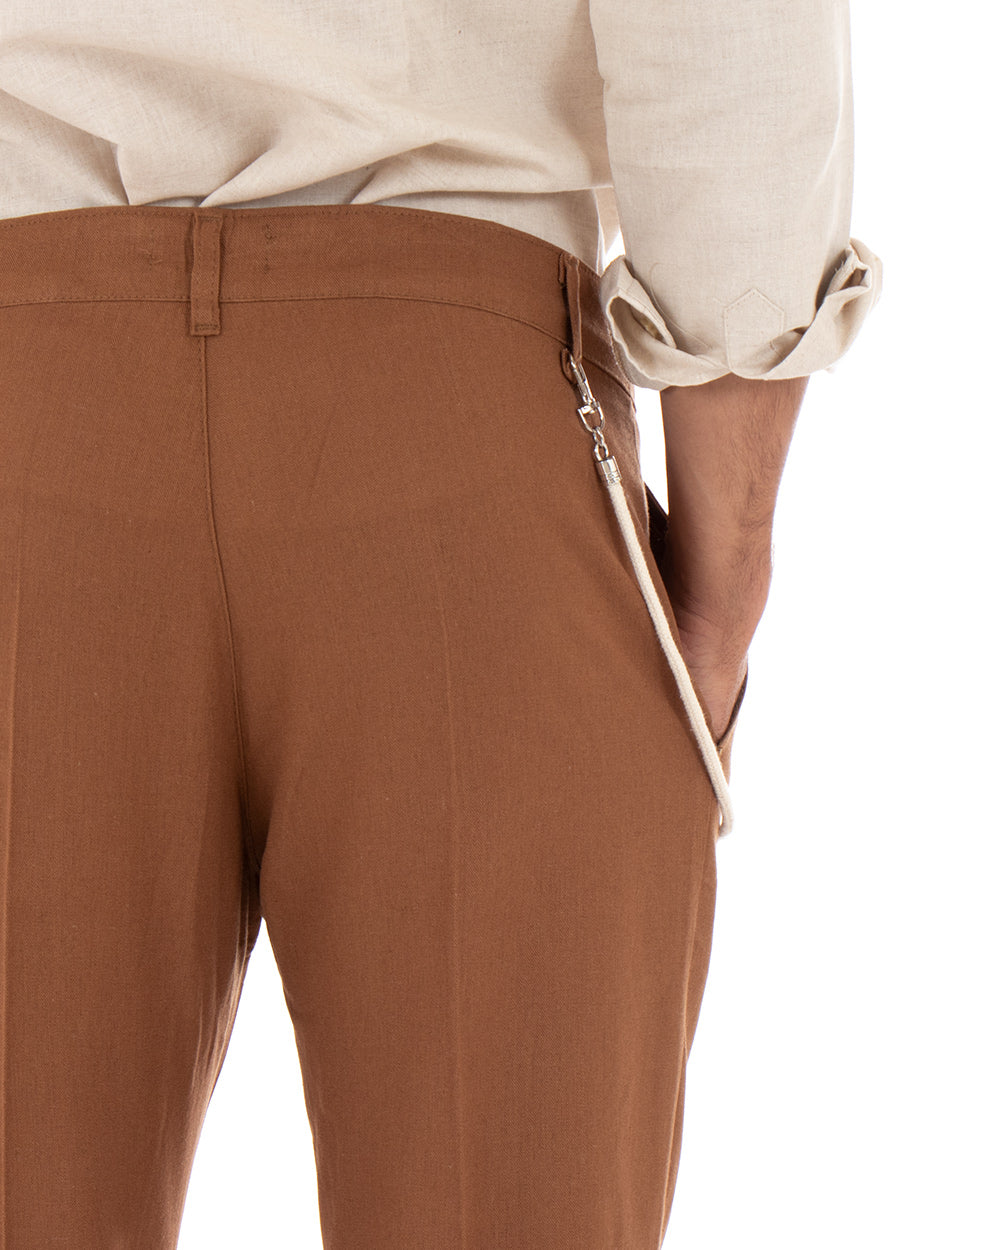 Pantaloni Uomo Lino Tasca America Abbottonatura Allungata Classico Elegante Camel GIOSAL-P5255A